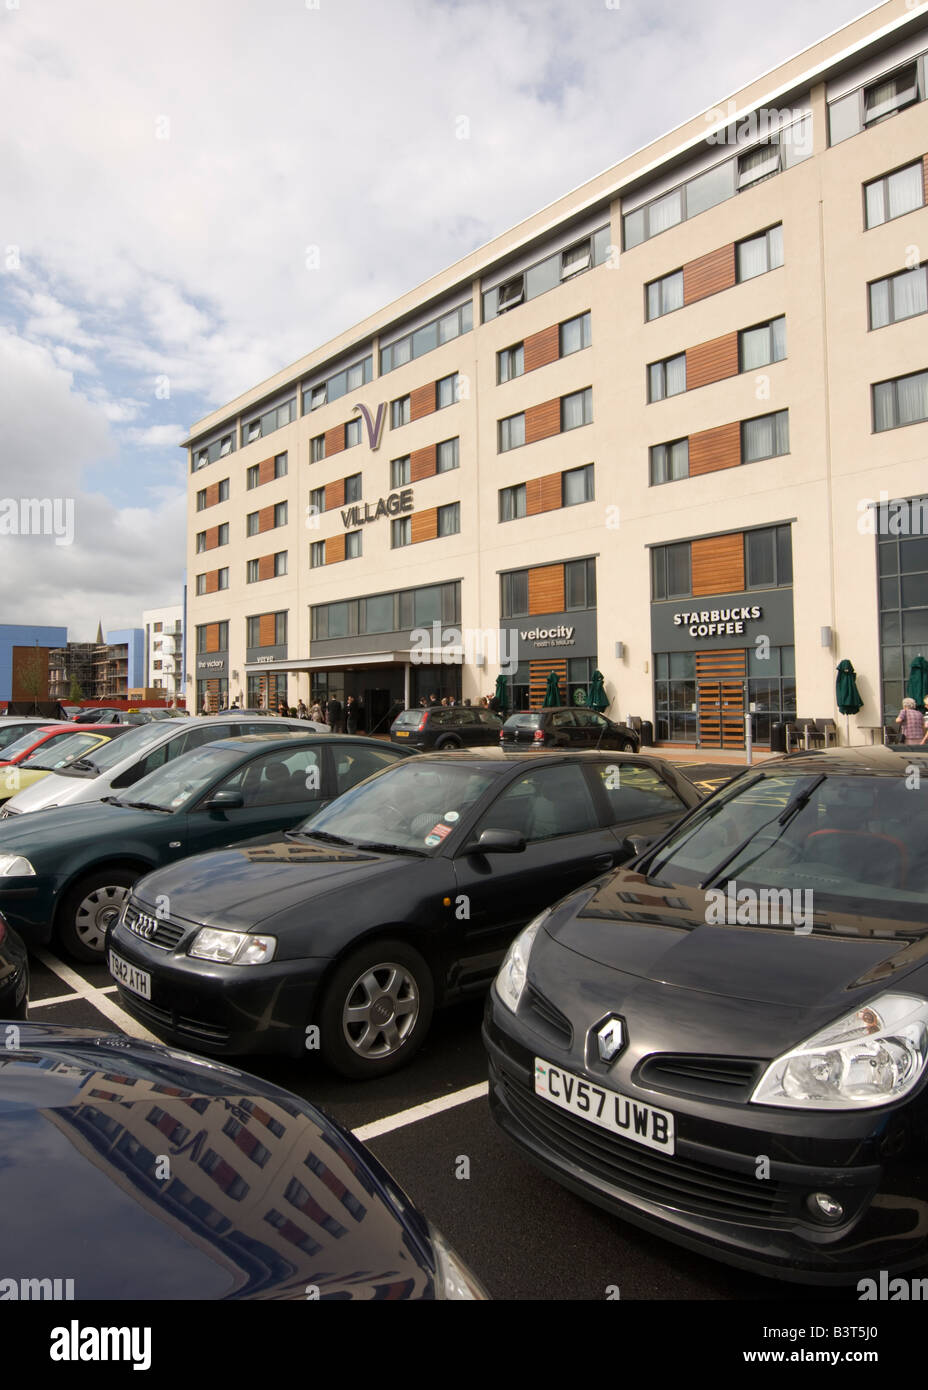 Das Dorf Hotelkette in Swansea SA1 Sanierung Zone, Wales UK, außen, parkten Autos außerhalb Stockfoto